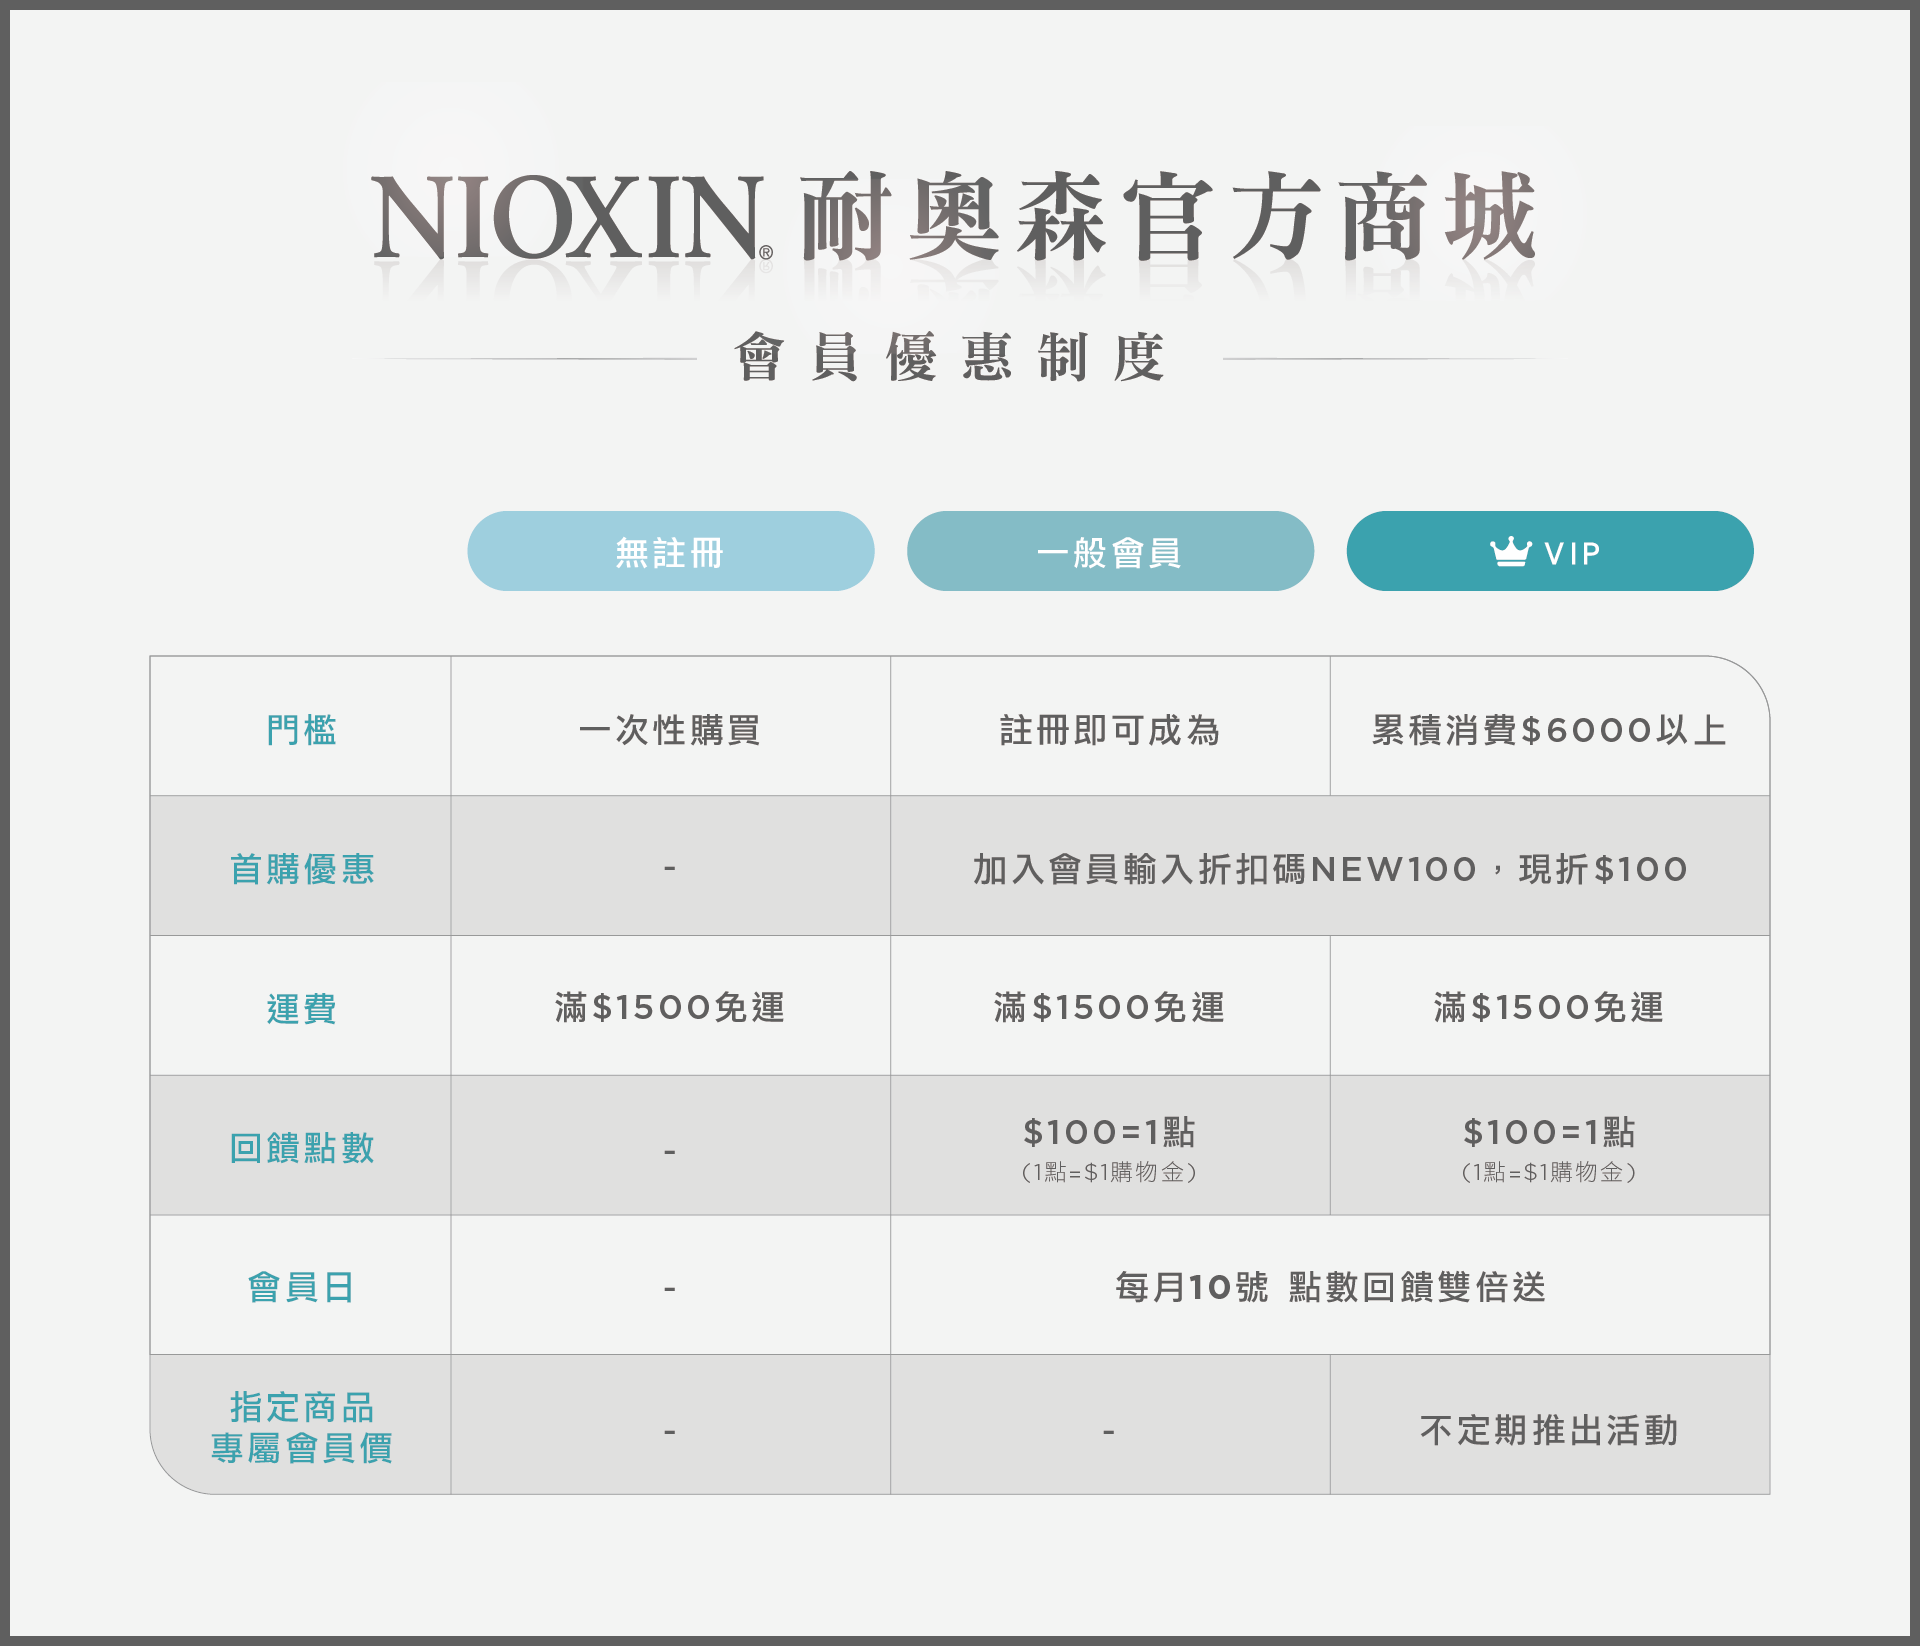 NIOXIN_網路_官網會員制度